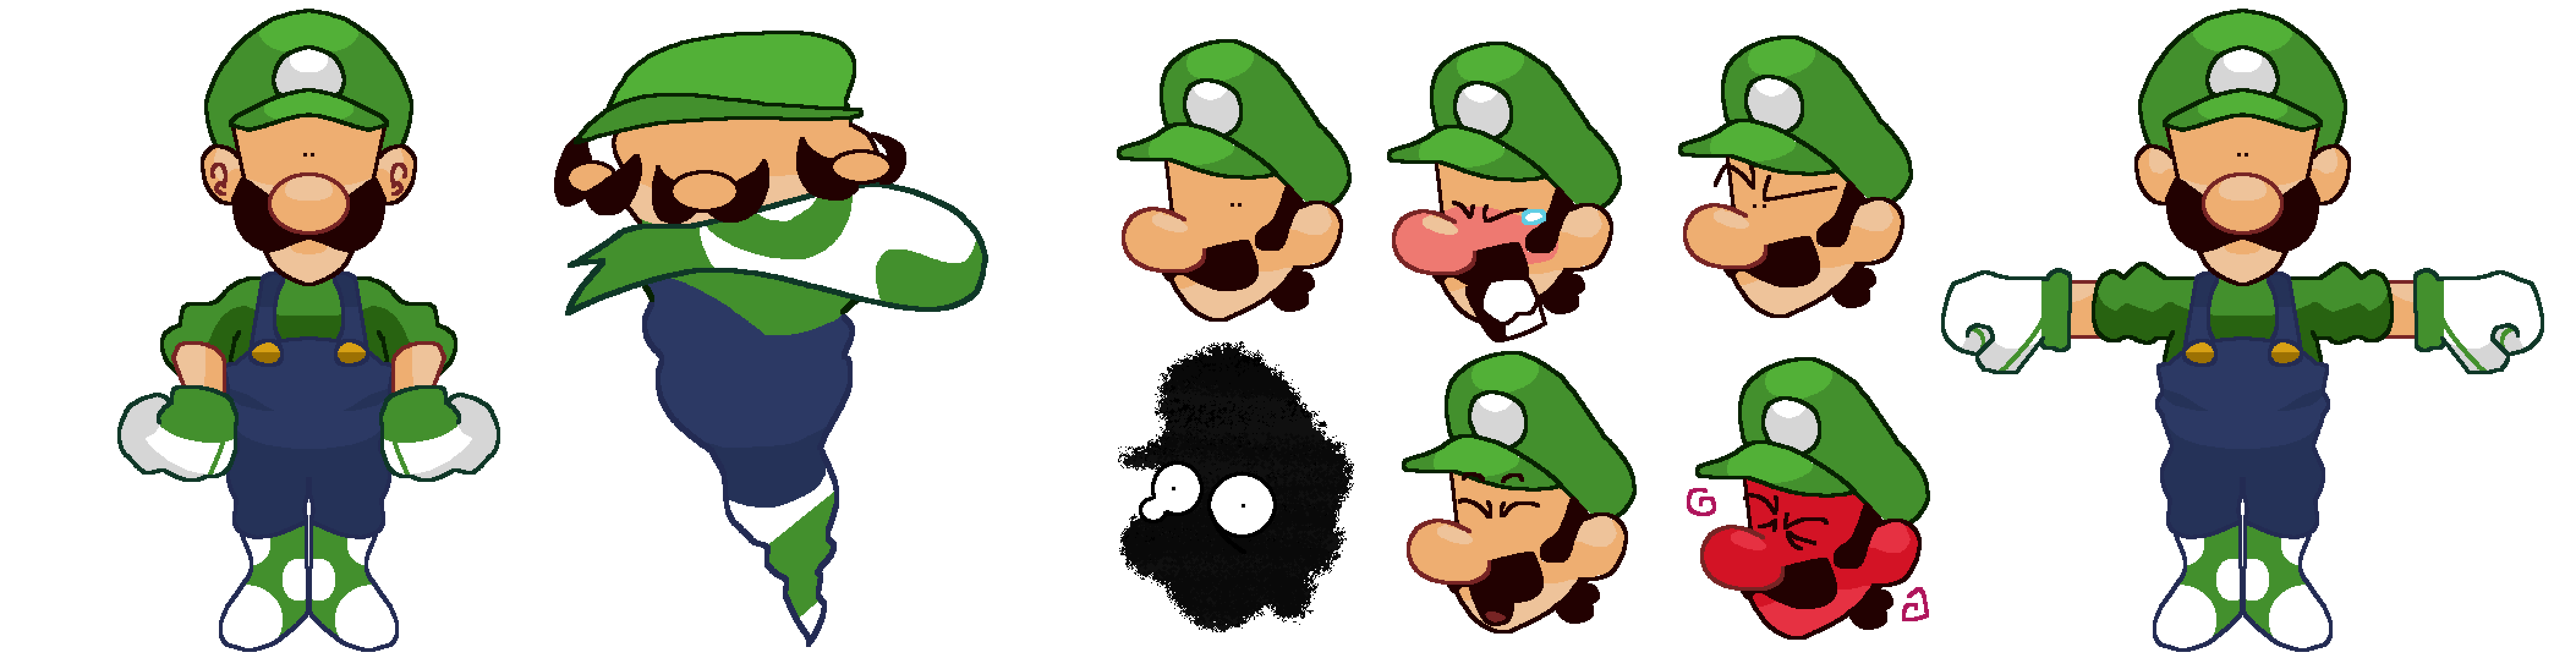 Luigi!Ref.gif